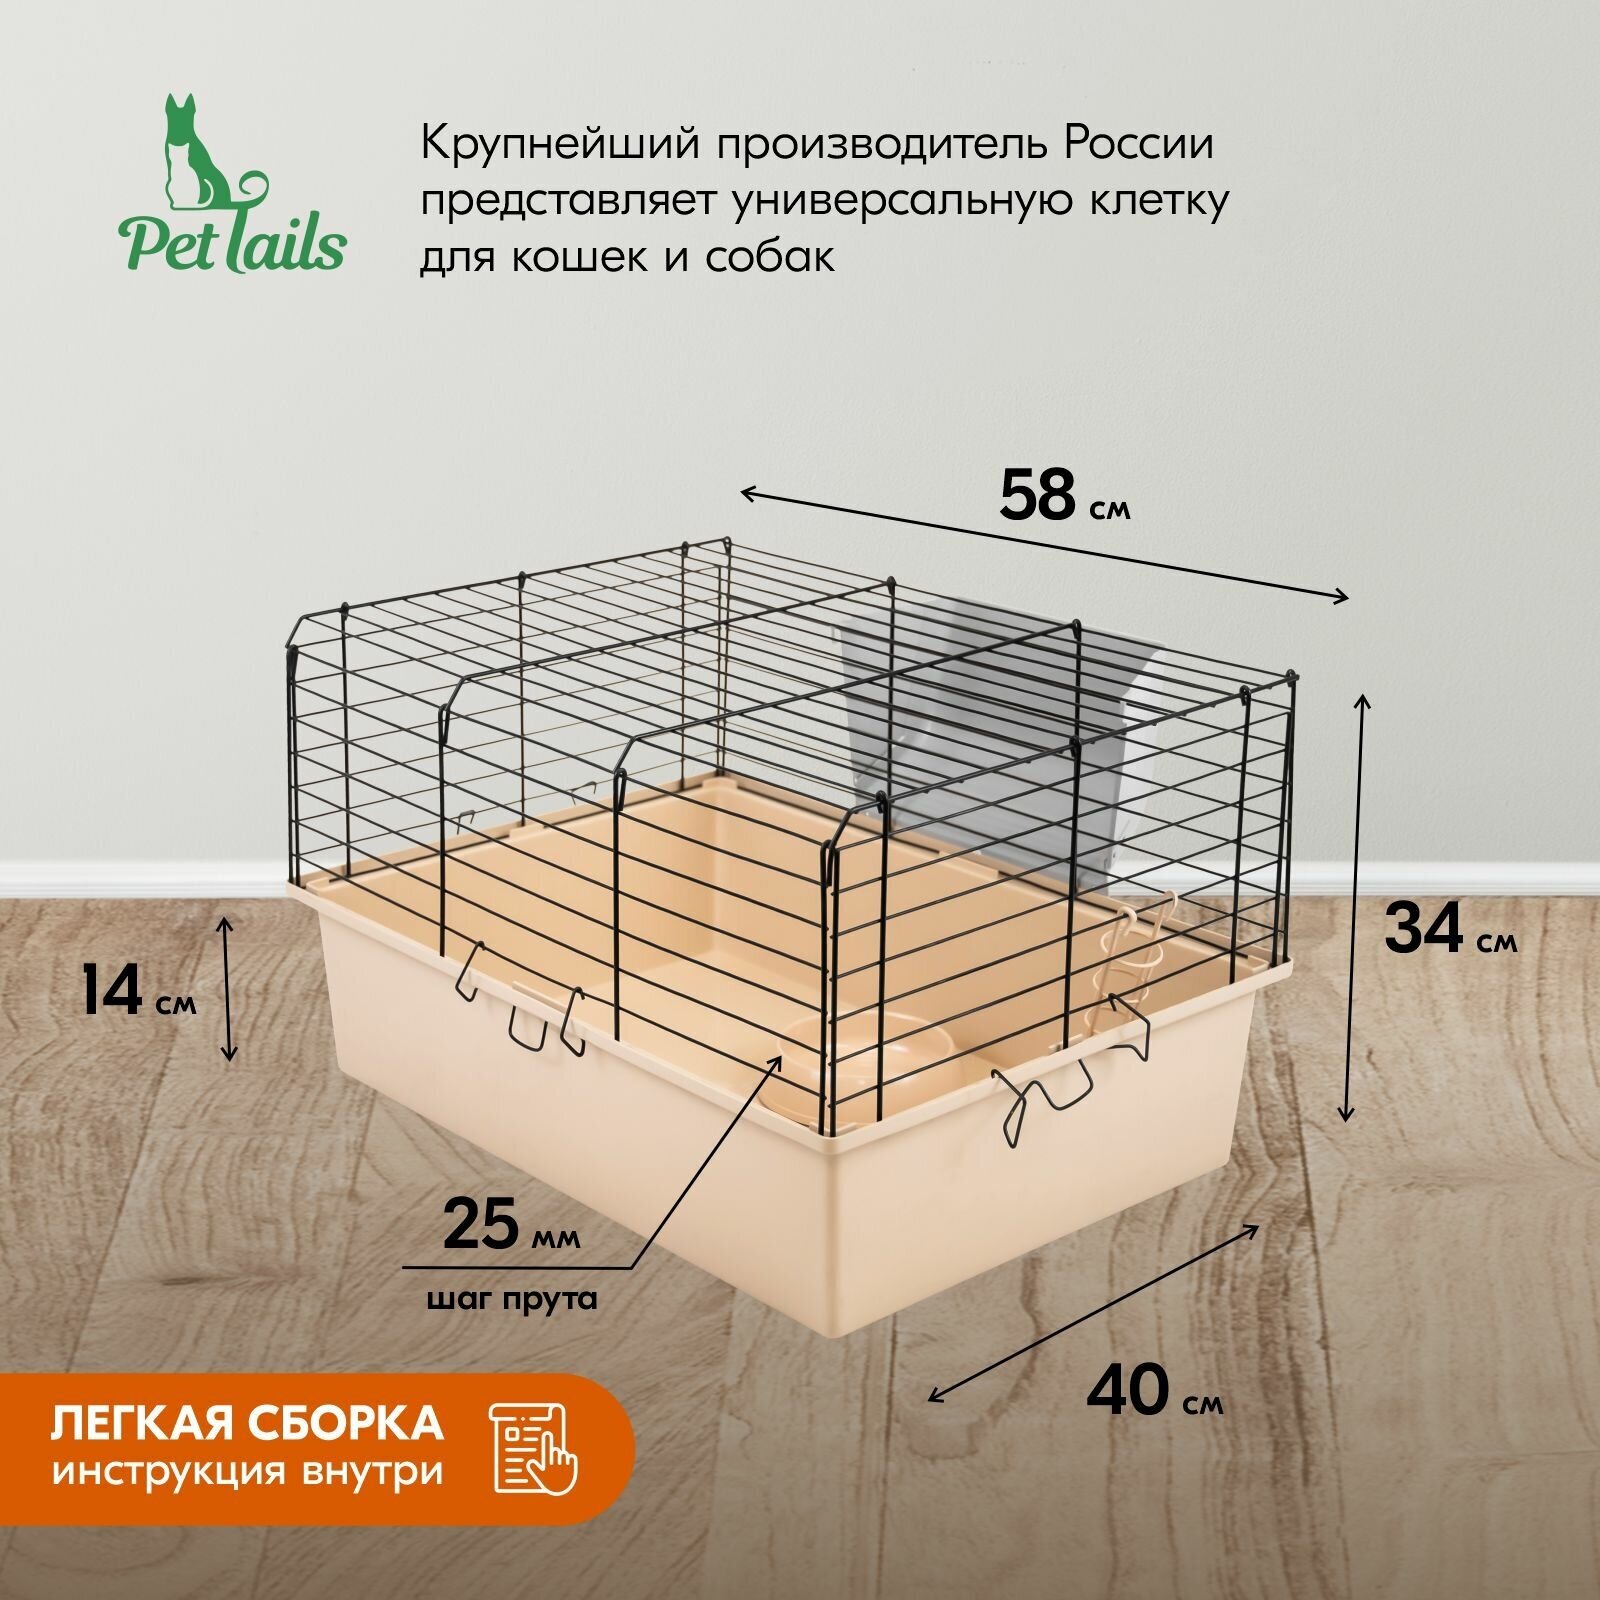 Клетка для кроликов PetTails №1 складная, шаг прута до 25мм, 58*40*h34см (+миска, 2 кормушки) беж-черн - фотография № 2